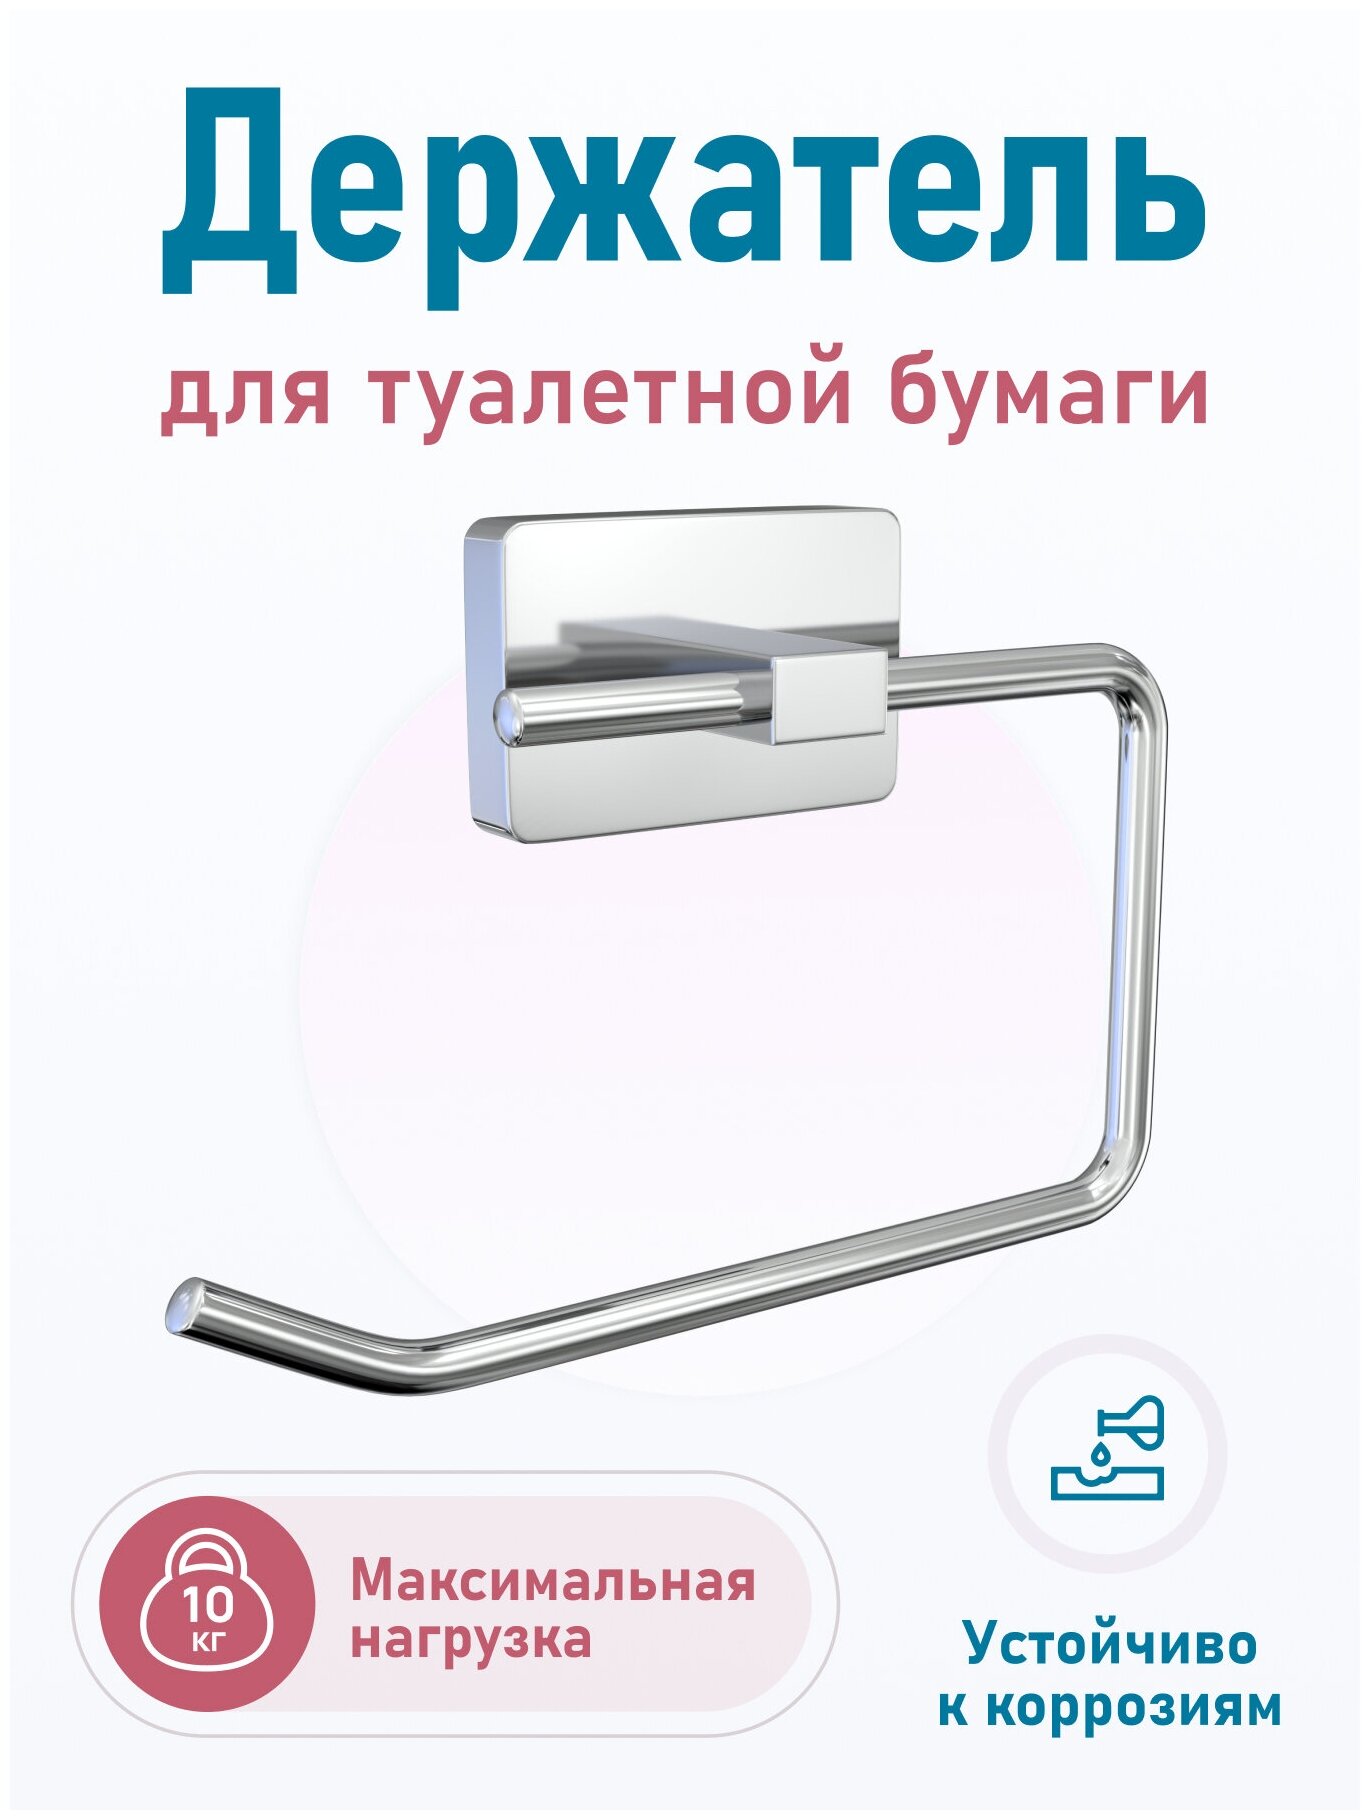 Держатель для туалетной бумаги "STYLE" / Бумагодержатель настенный